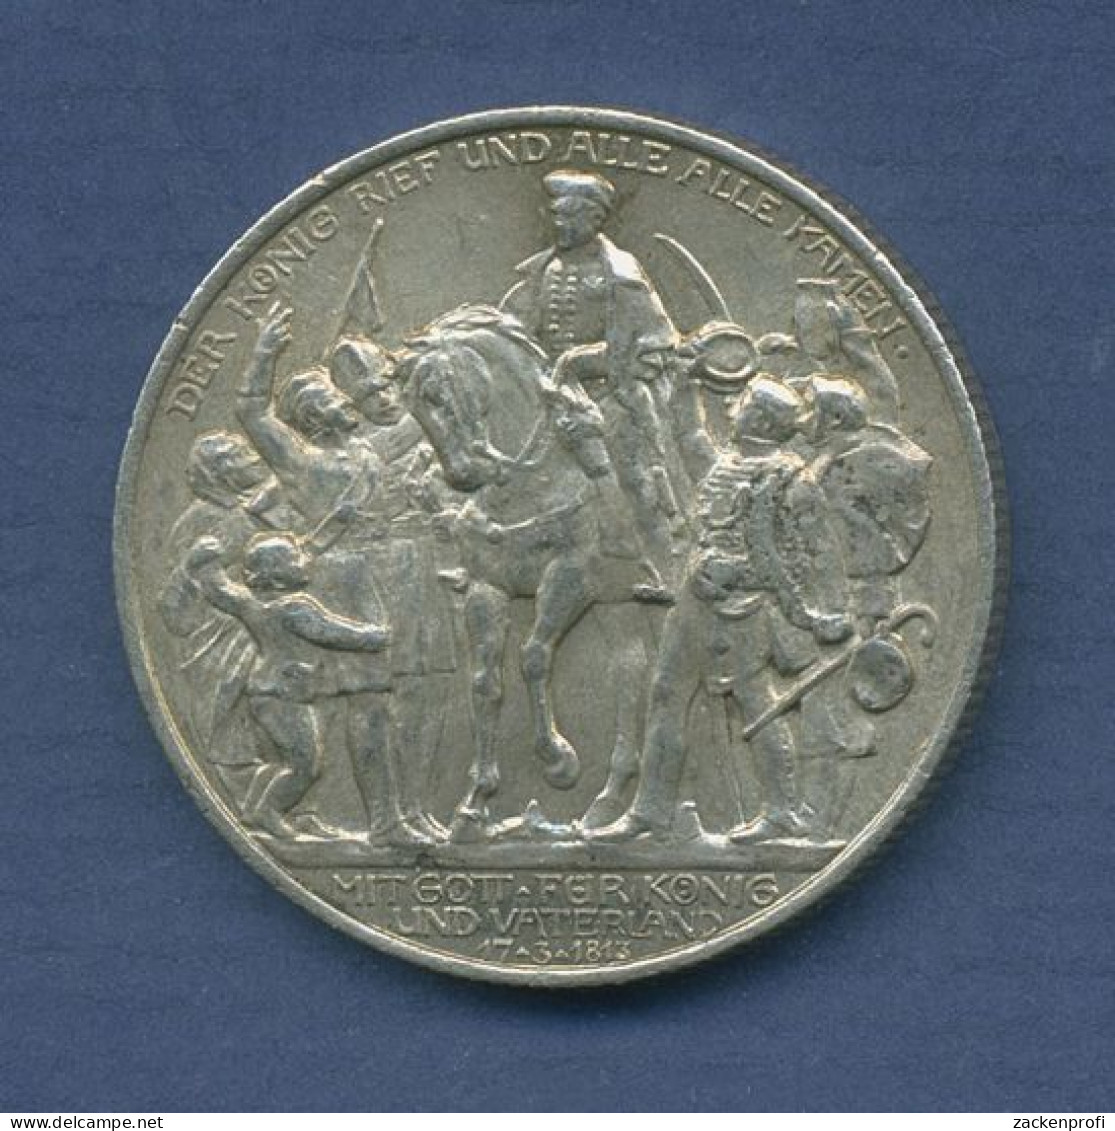 Preußen 2 Mark 1913 A, 100 Jahre Befreiungskriege, J 109 Vz (m6573) - 2, 3 & 5 Mark Plata